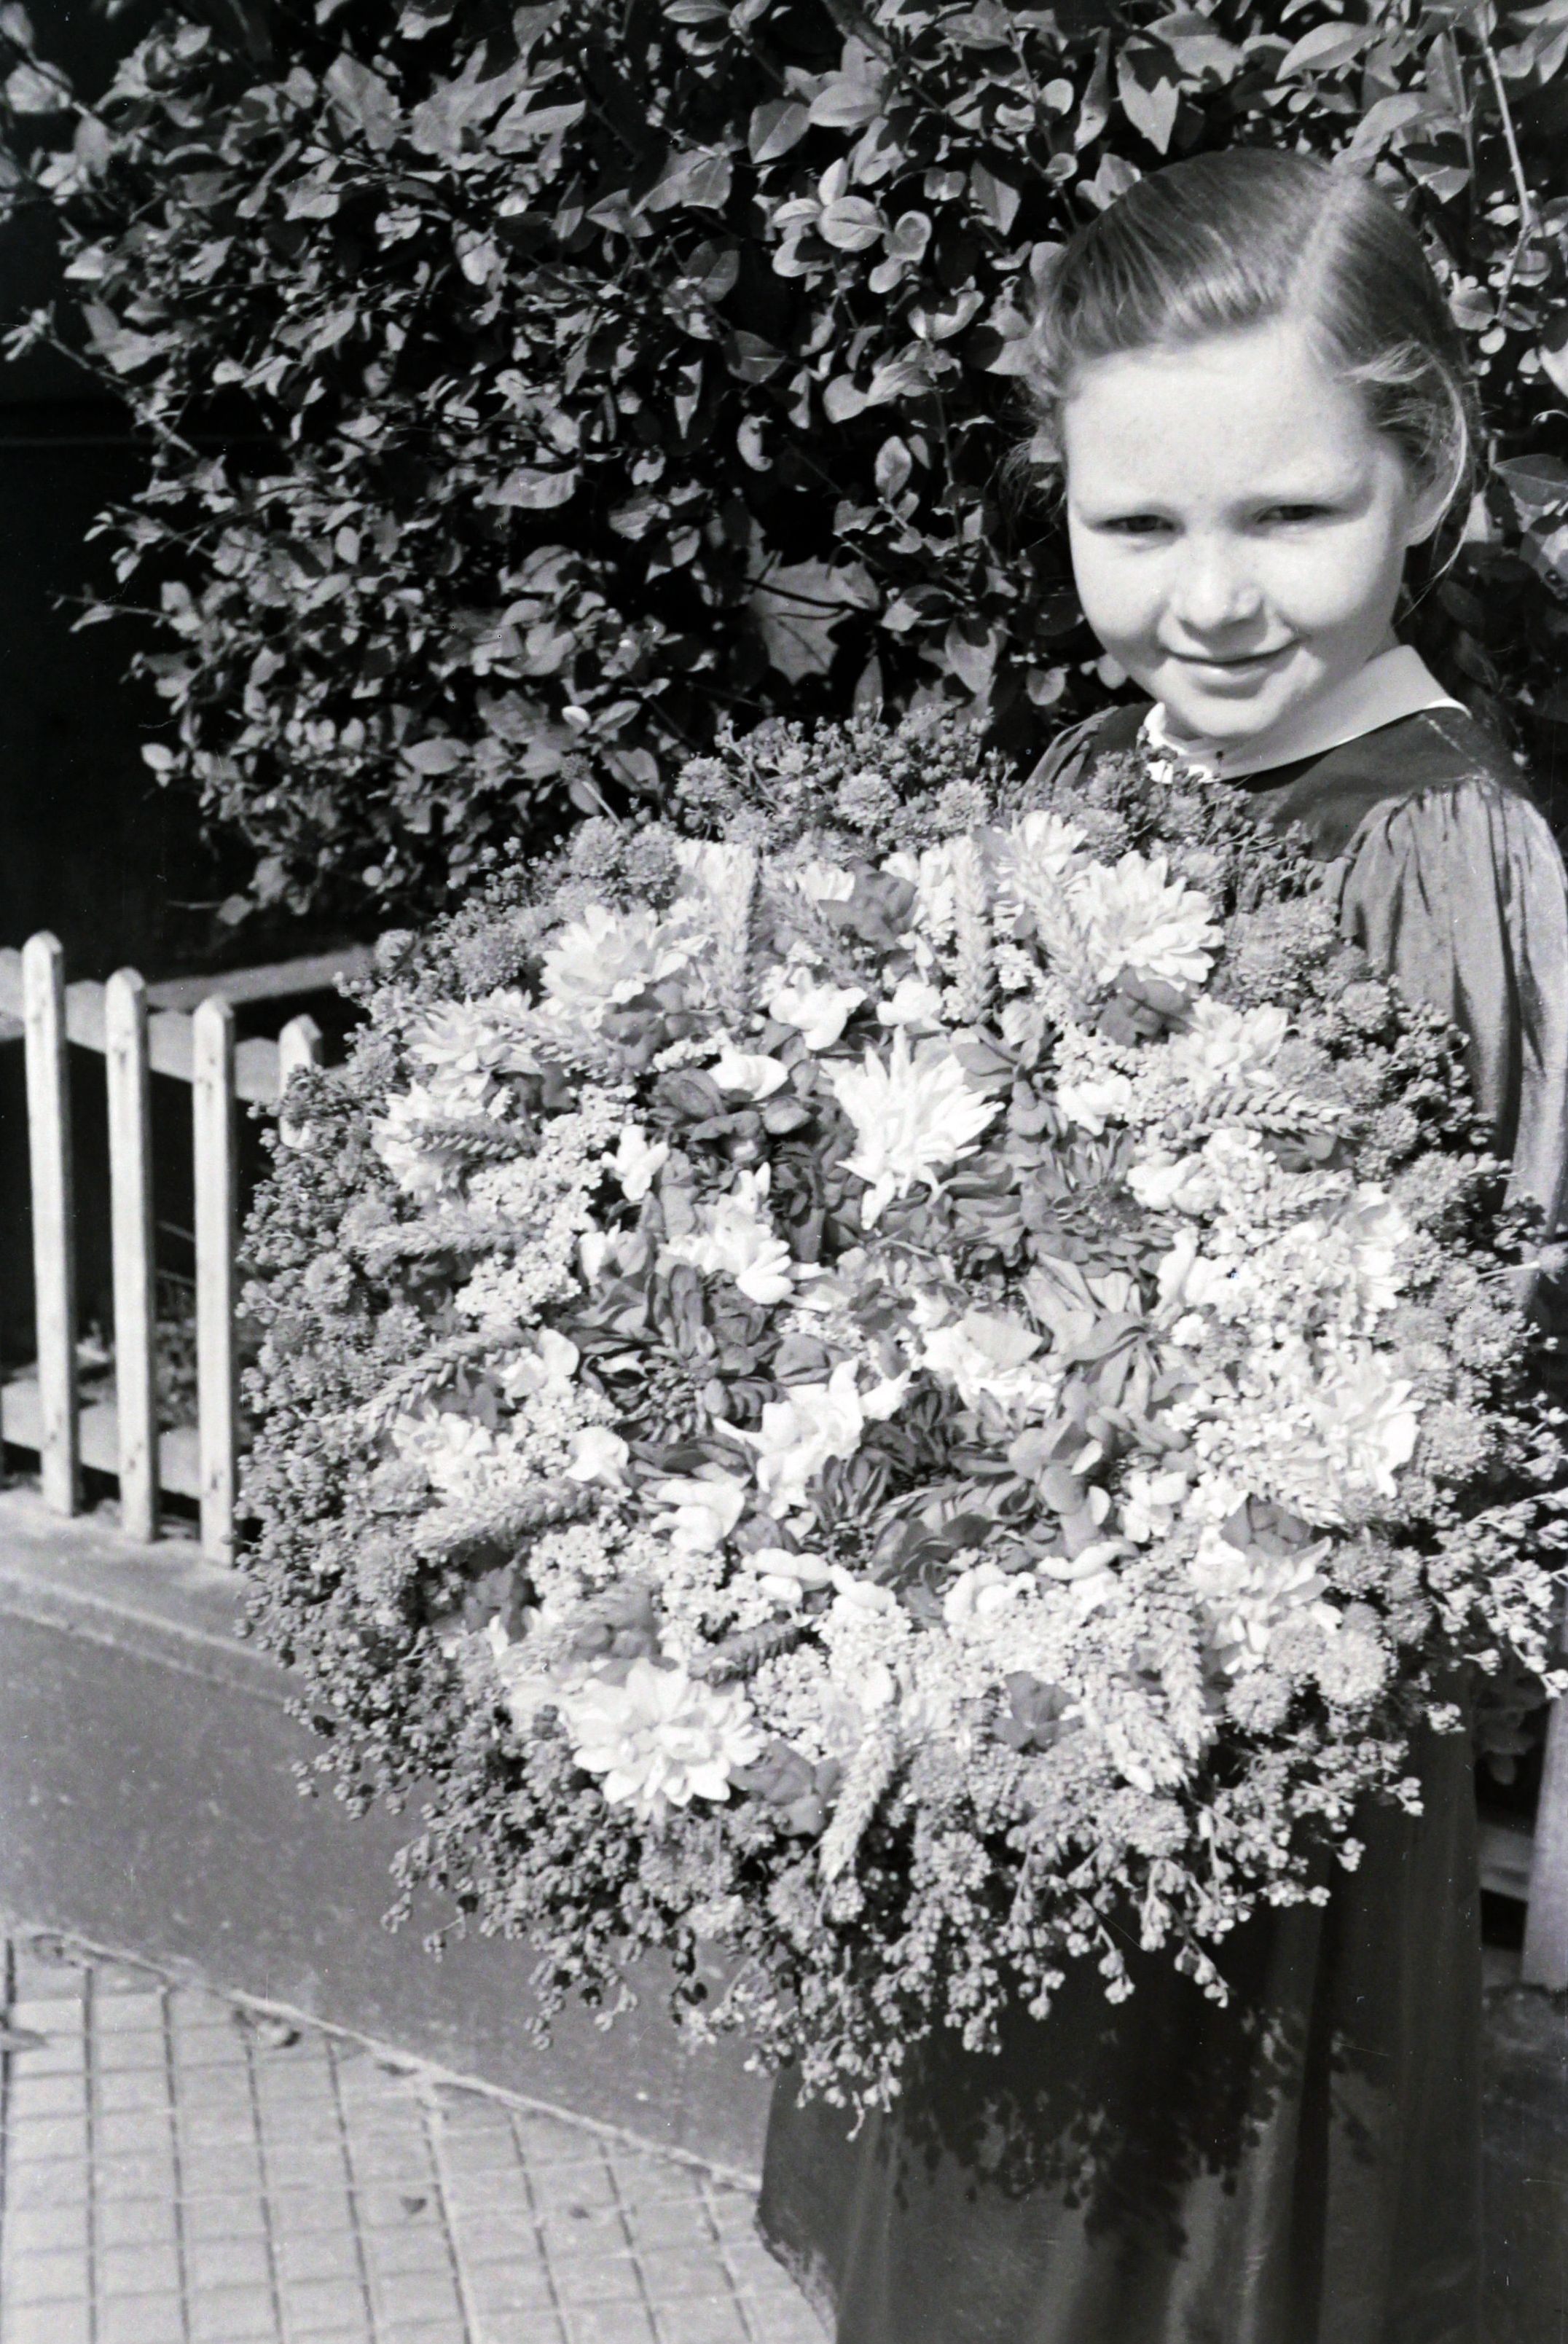 Kräuterbüschelweihe im August 1950, Bilder von Friedrich Strohm
